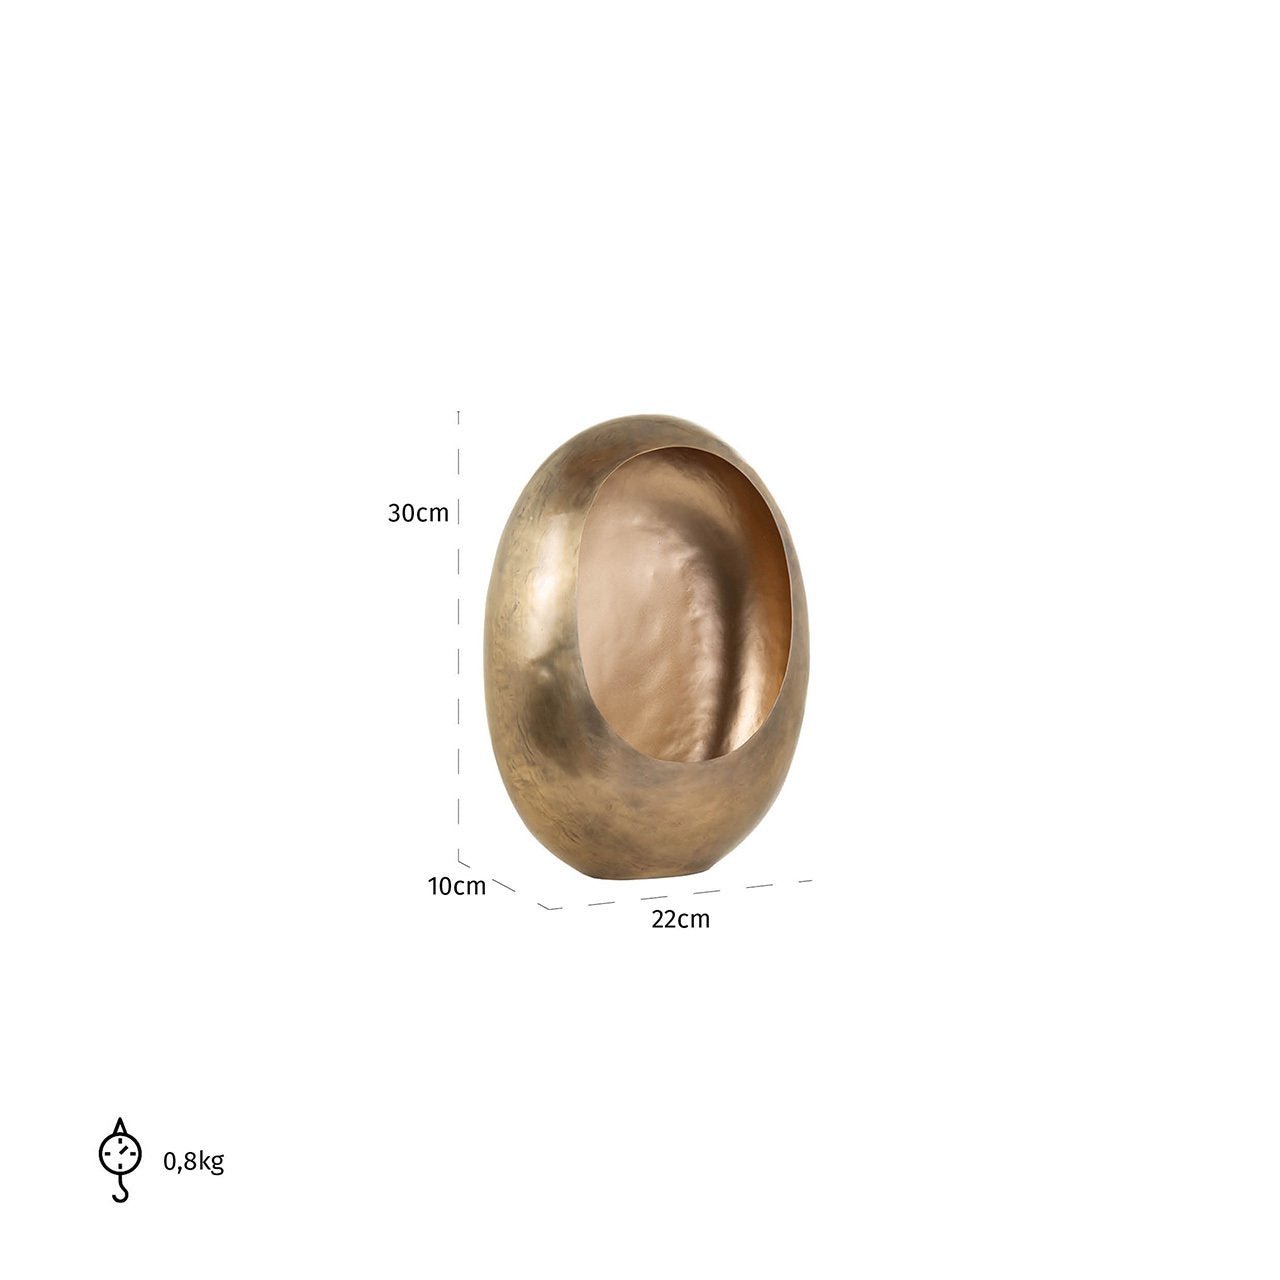 Gouden metalen kandelaar kopen in elegante ovale vorm